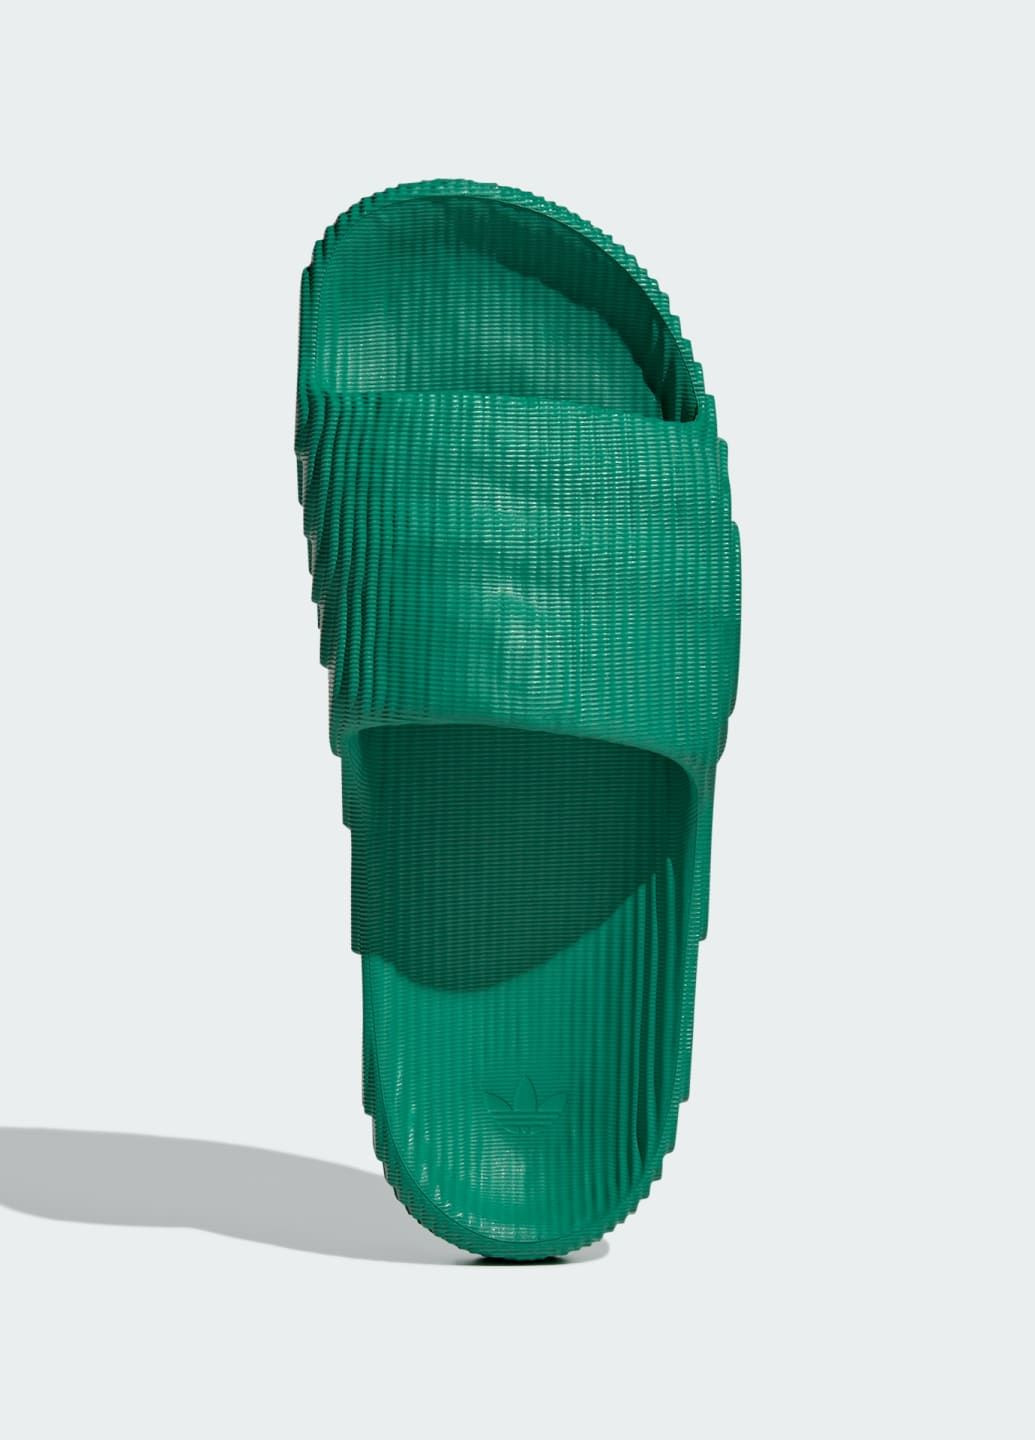 Зеленые спортивные шлепанцы adilette 22 adidas